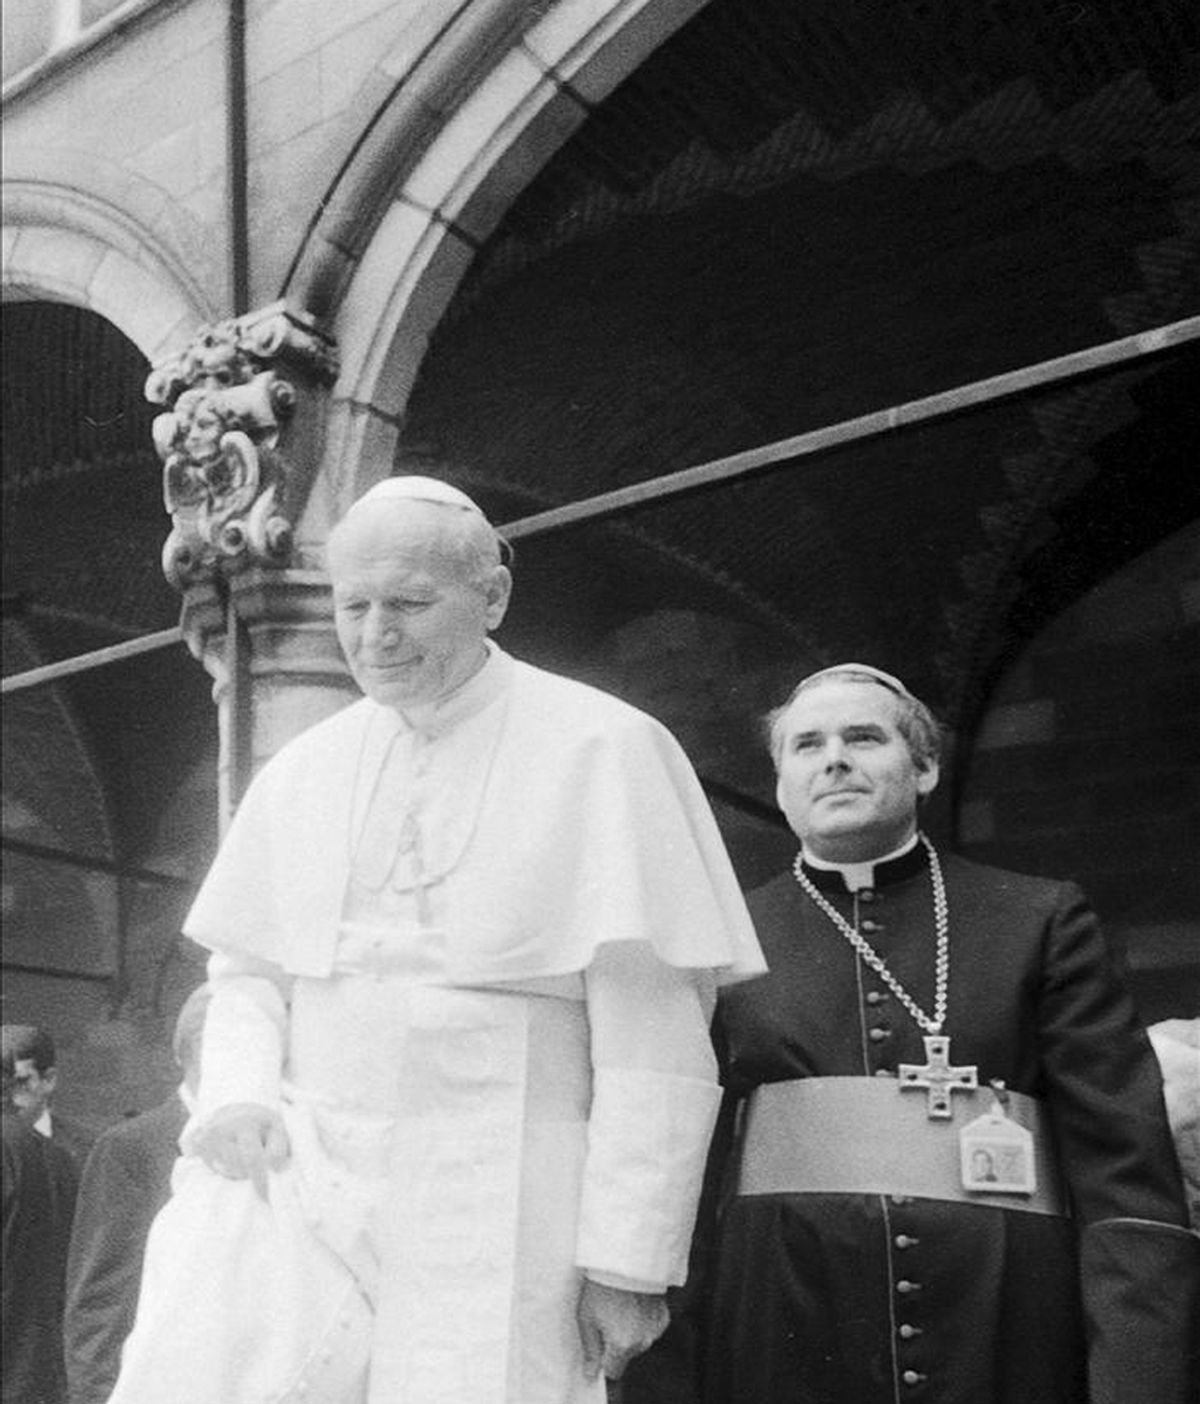 Fotografía de archivo tomada el 17 de mayo de 1985 que muestra al entonces obispo de Brujas Roger Joseph Vangheluwe (d) junto al papa Juan Pablo II , durante la visita de este último a la localidad de Ypres (Bélgica). EFE/Archivo